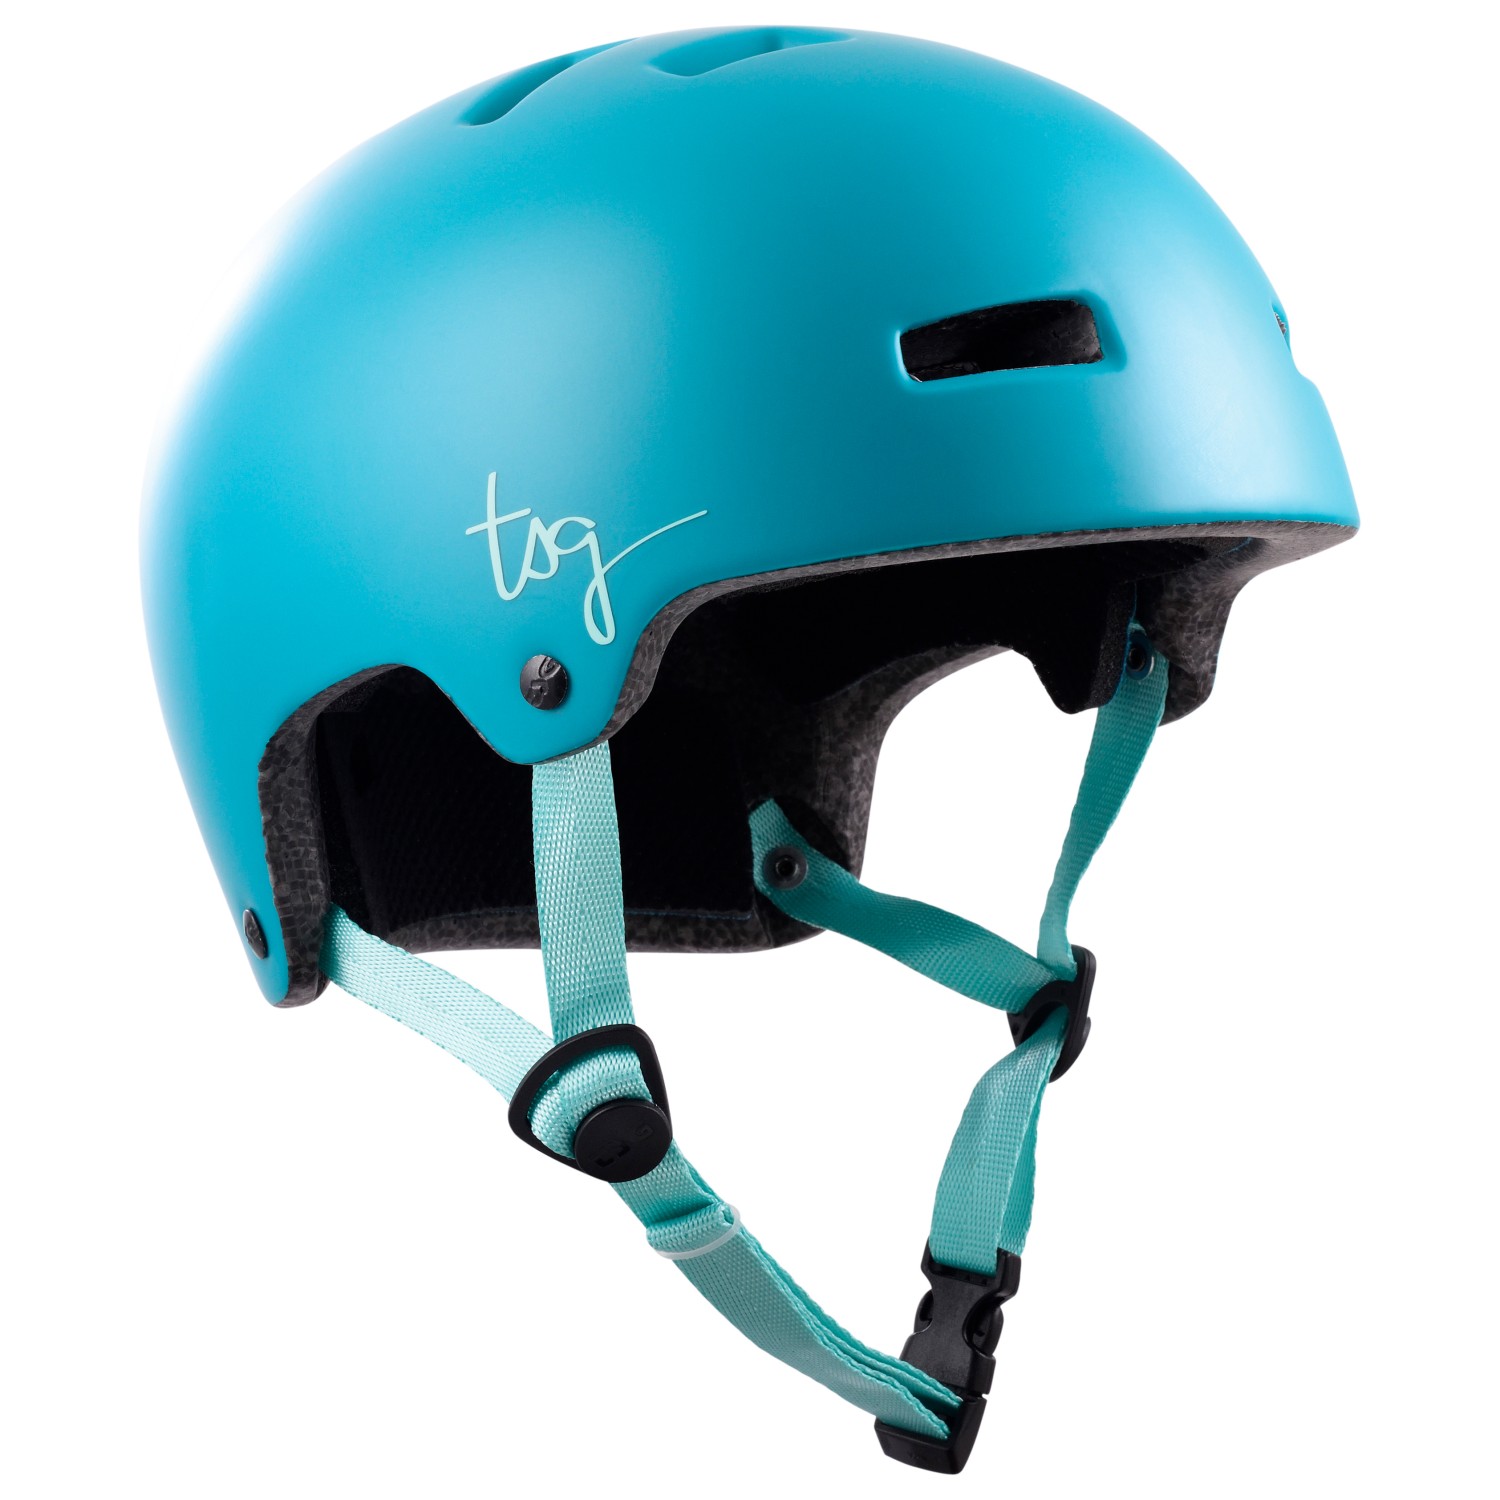 Велосипедный шлем Tsg Women's Ivy Solid Color, цвет Satin Aquarelle